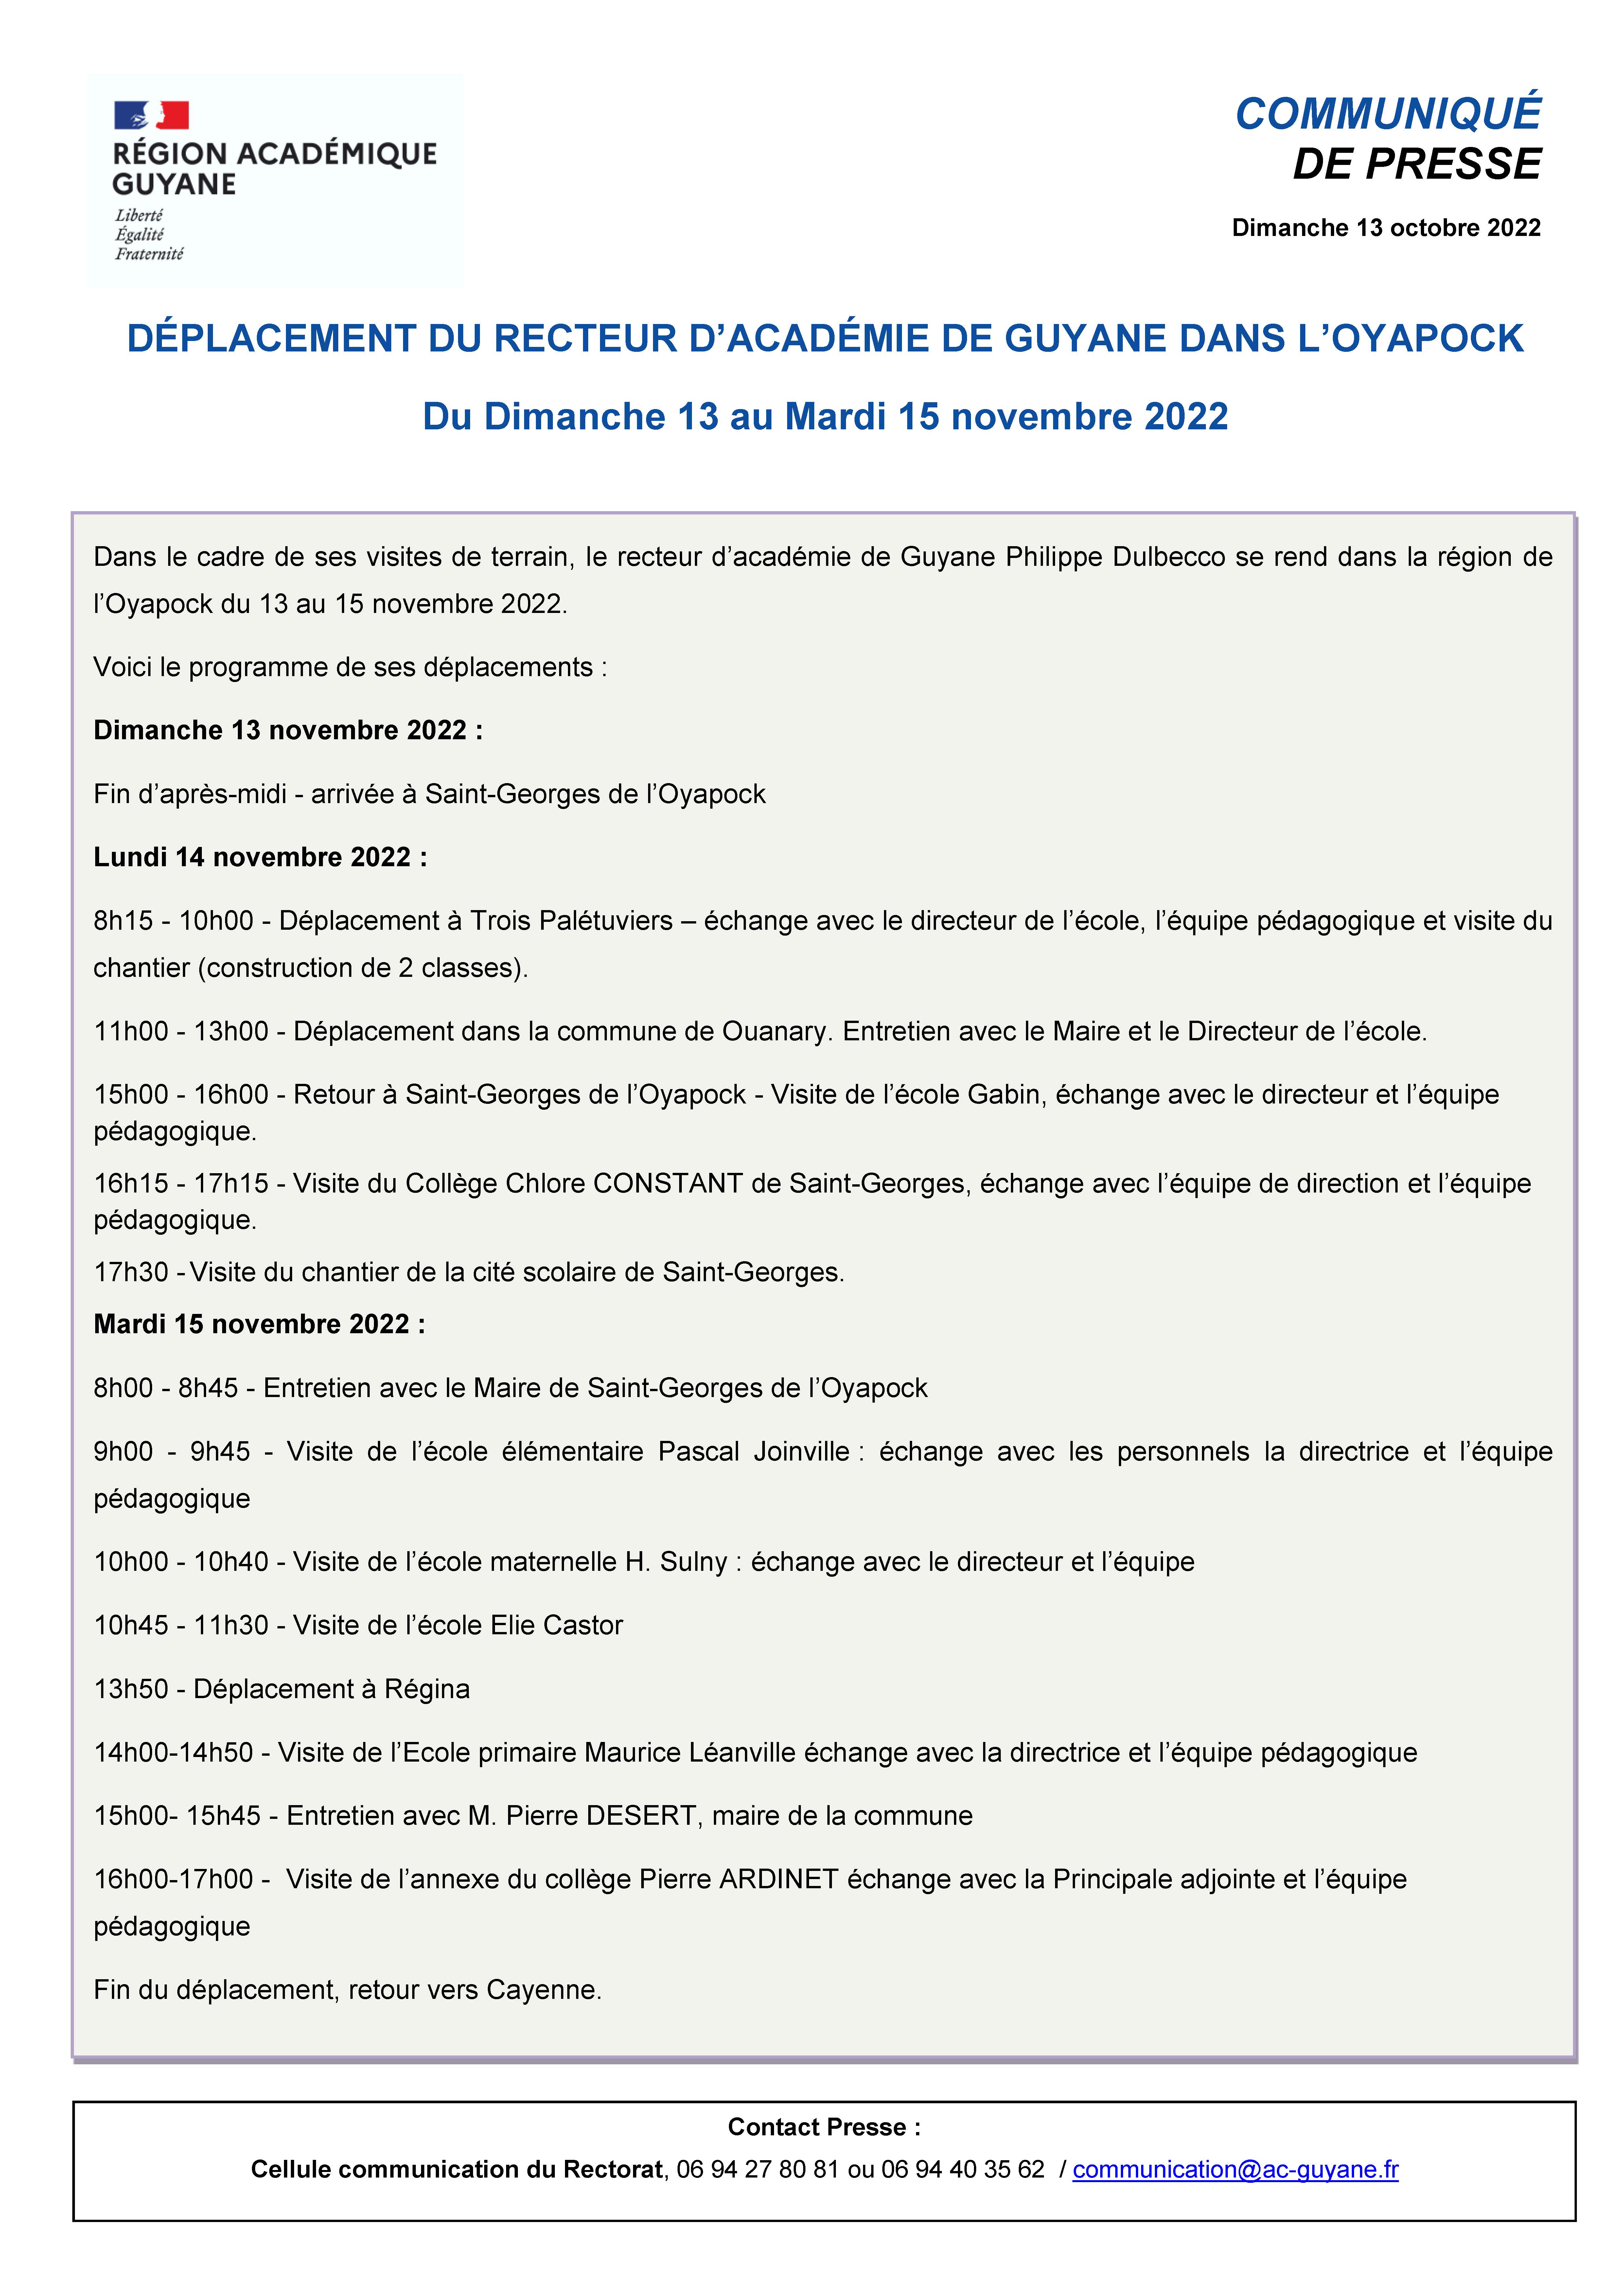 Déplacement du Recteur dans l'Oyapock du 13 au 15 novembre 2022 - Saint-Georges dont Trois Palétuviers, Ouanary et Régina